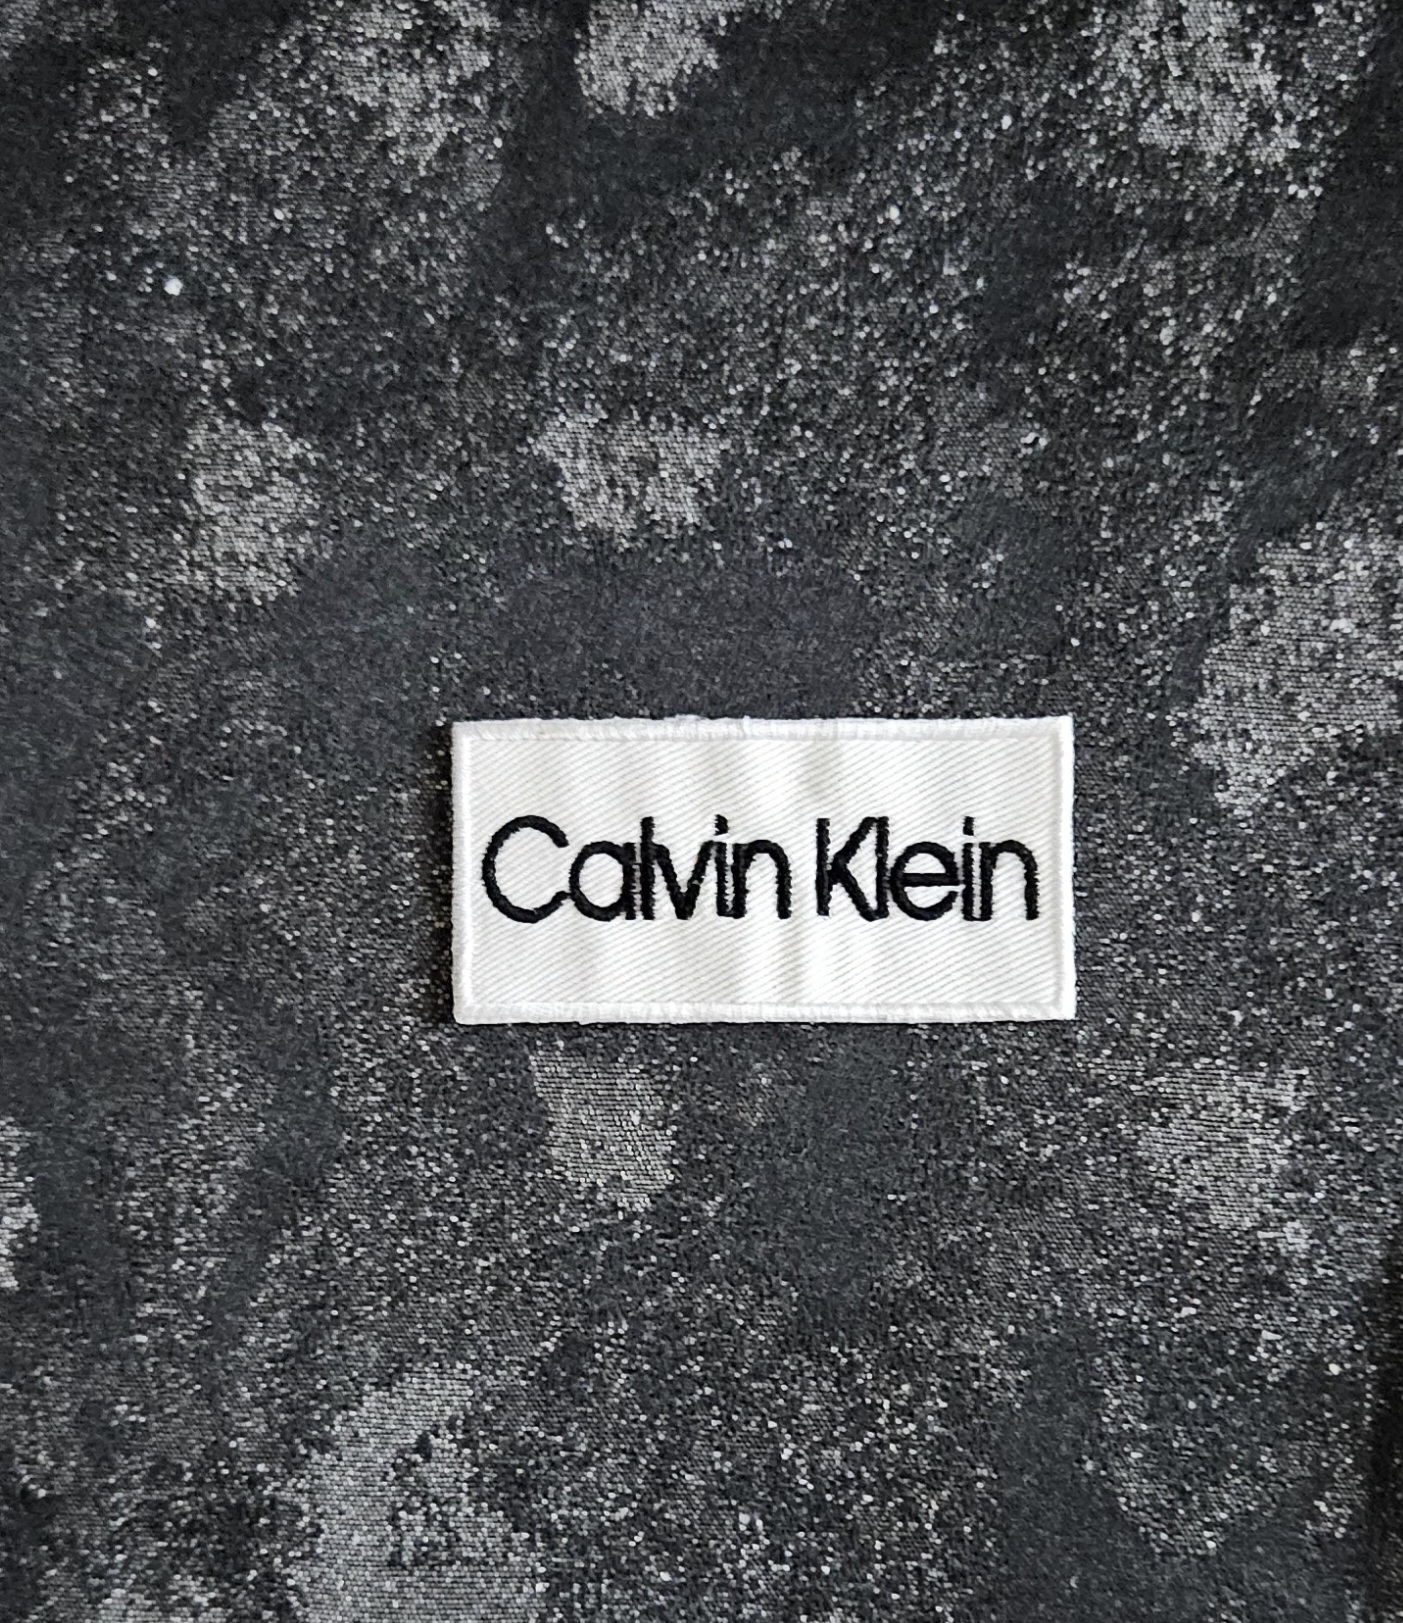 Patch Toppa Replica Brand Calvin Klein Ricamata Termoadesiva o da Cucire 8×4  cm - Toppe Patches